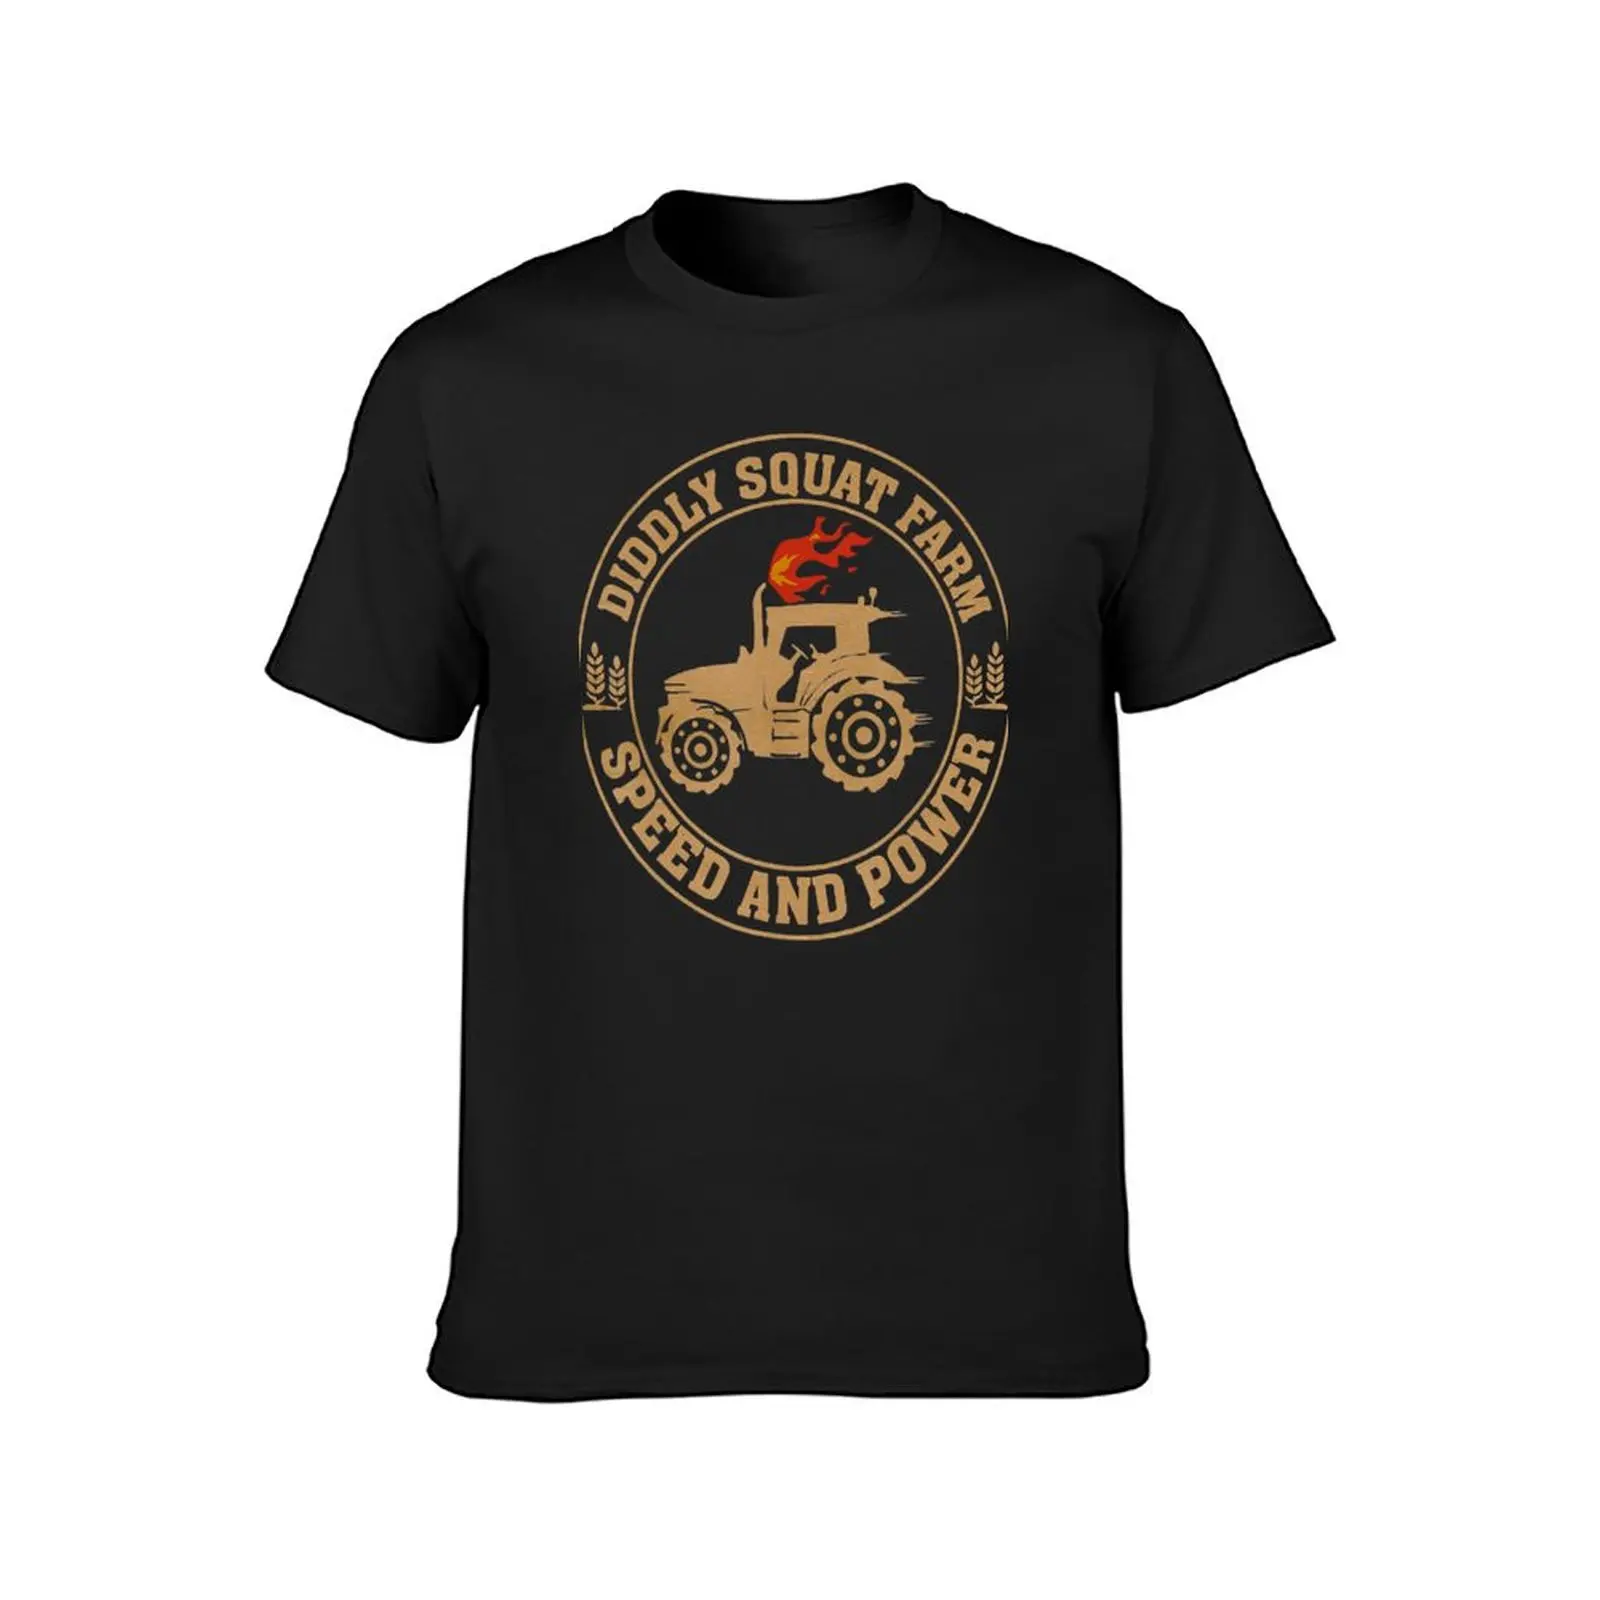 Идеальный дизайн трактора, футболка Diddly Squat Farm Speed And Power, летняя одежда, футболки funnys для мужчин, упаковка